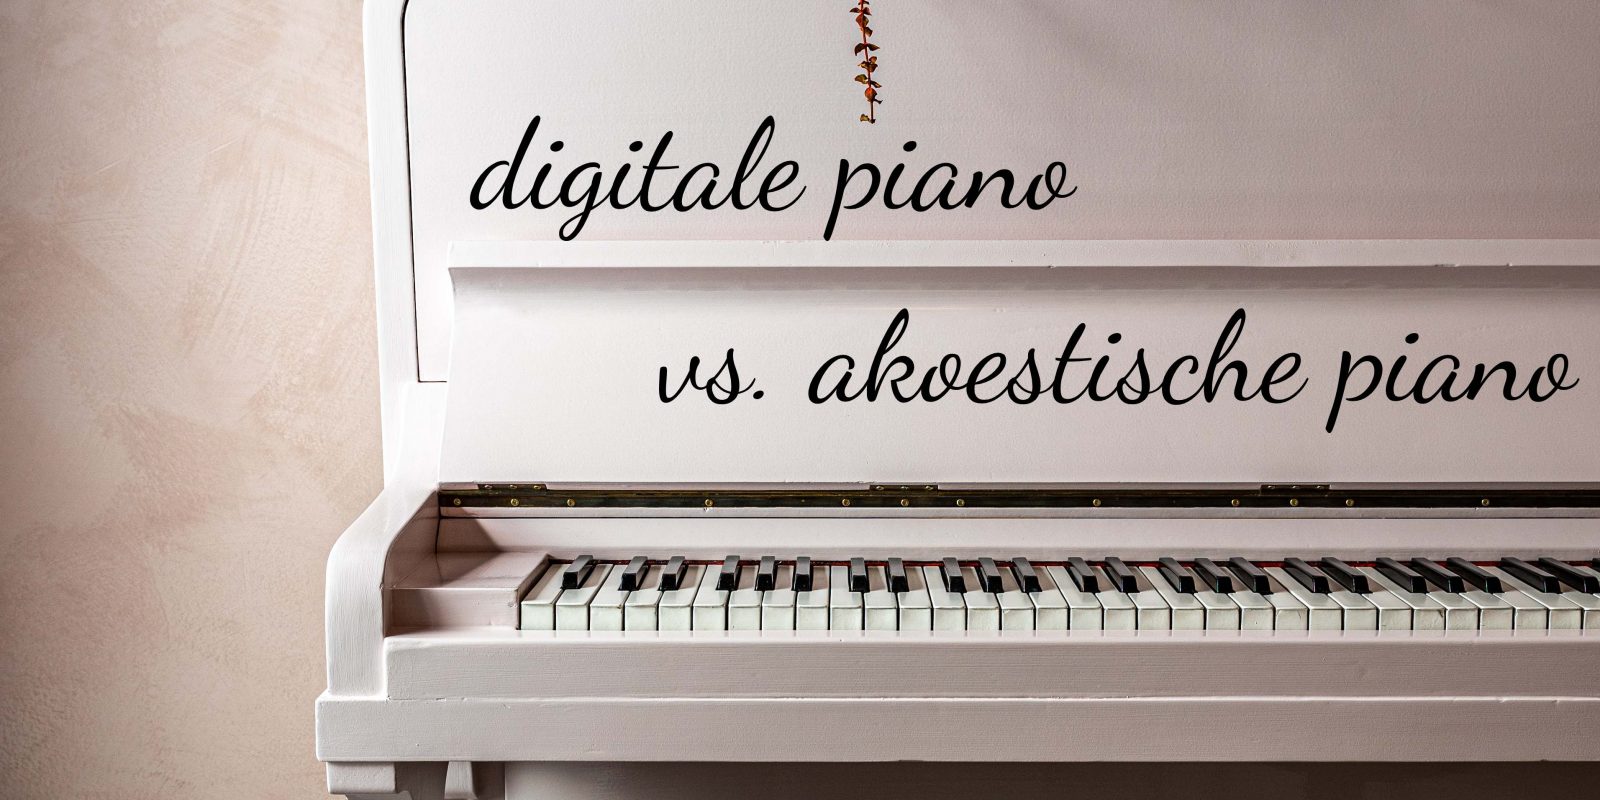 digitale of akoestische piano kopen